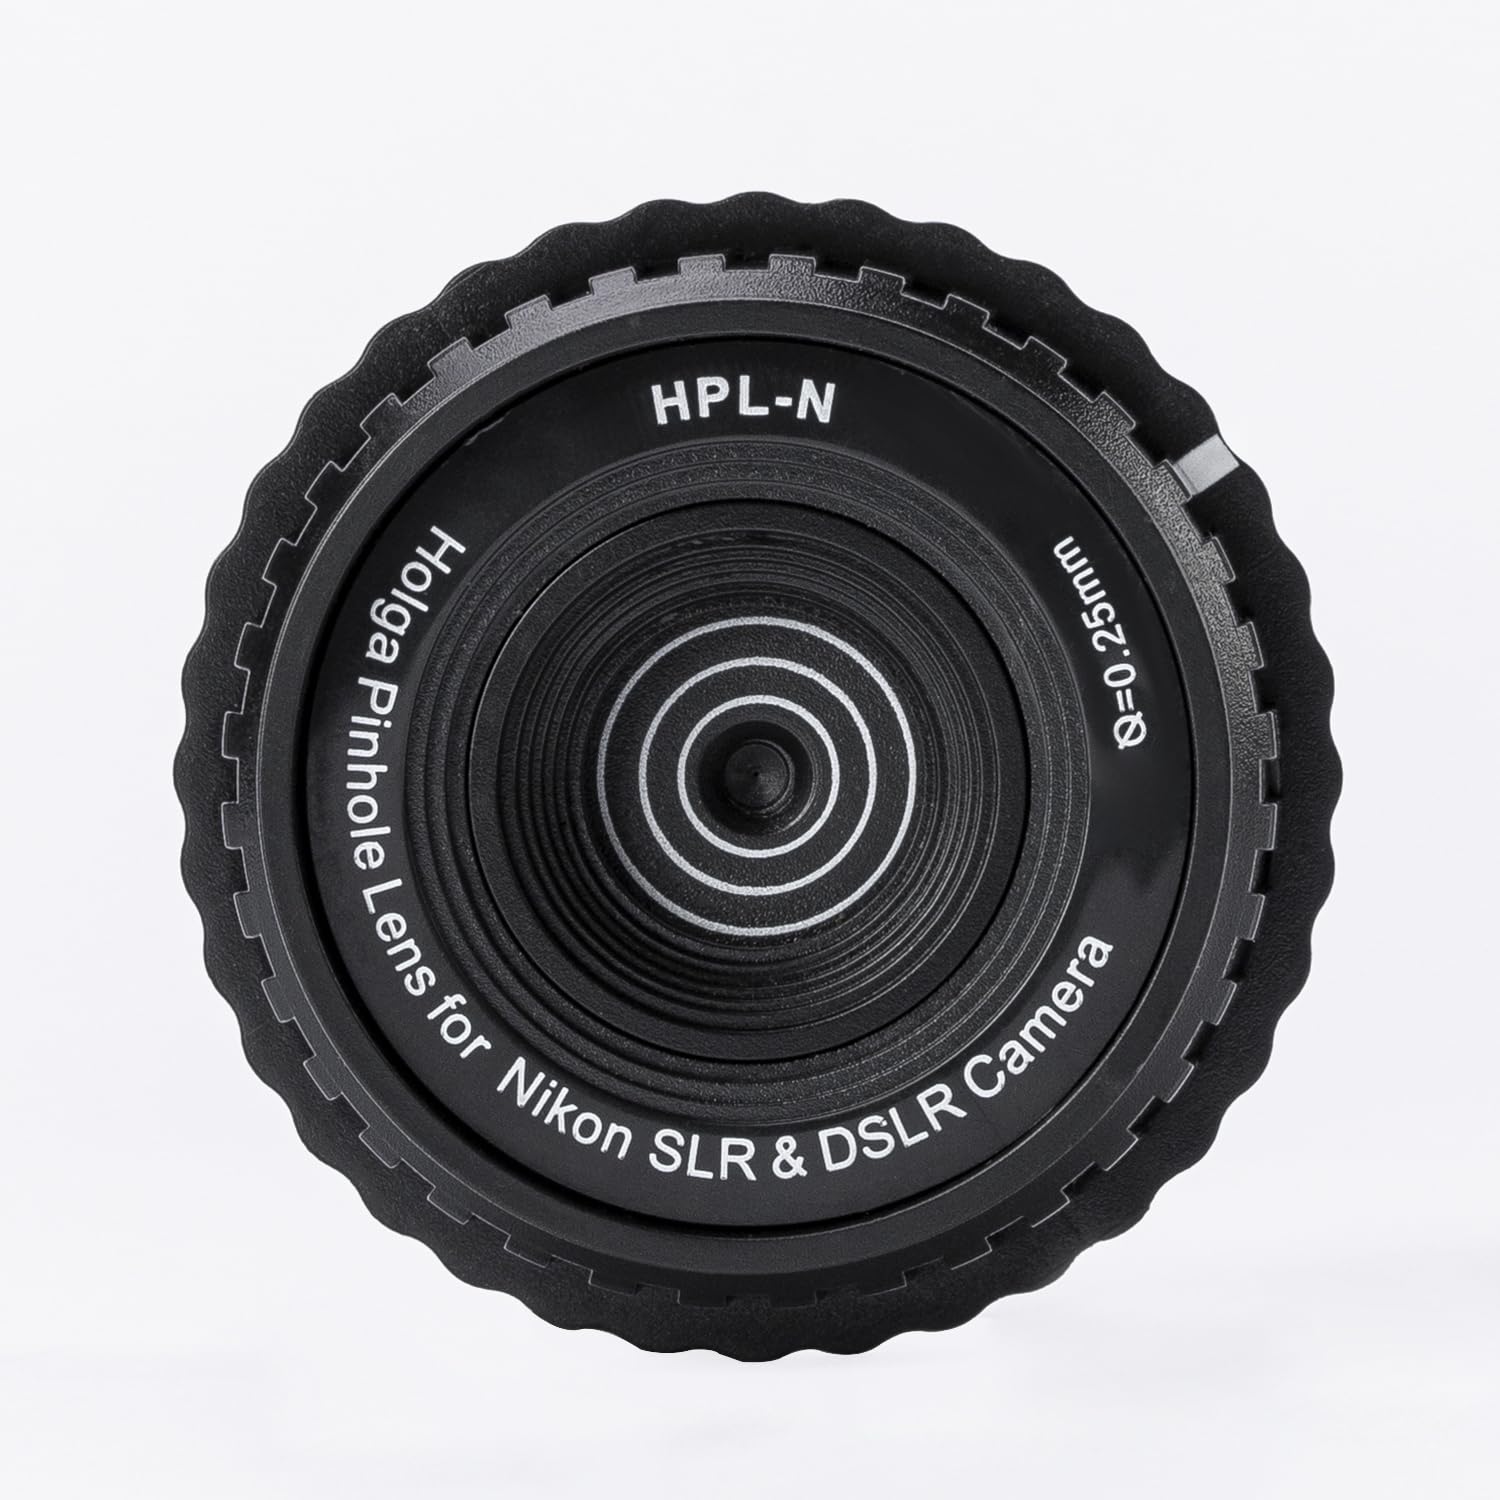 Holga HPL-N 0.25mm Pinhole Lens for Nikon SLR & DSLR Camera(Black